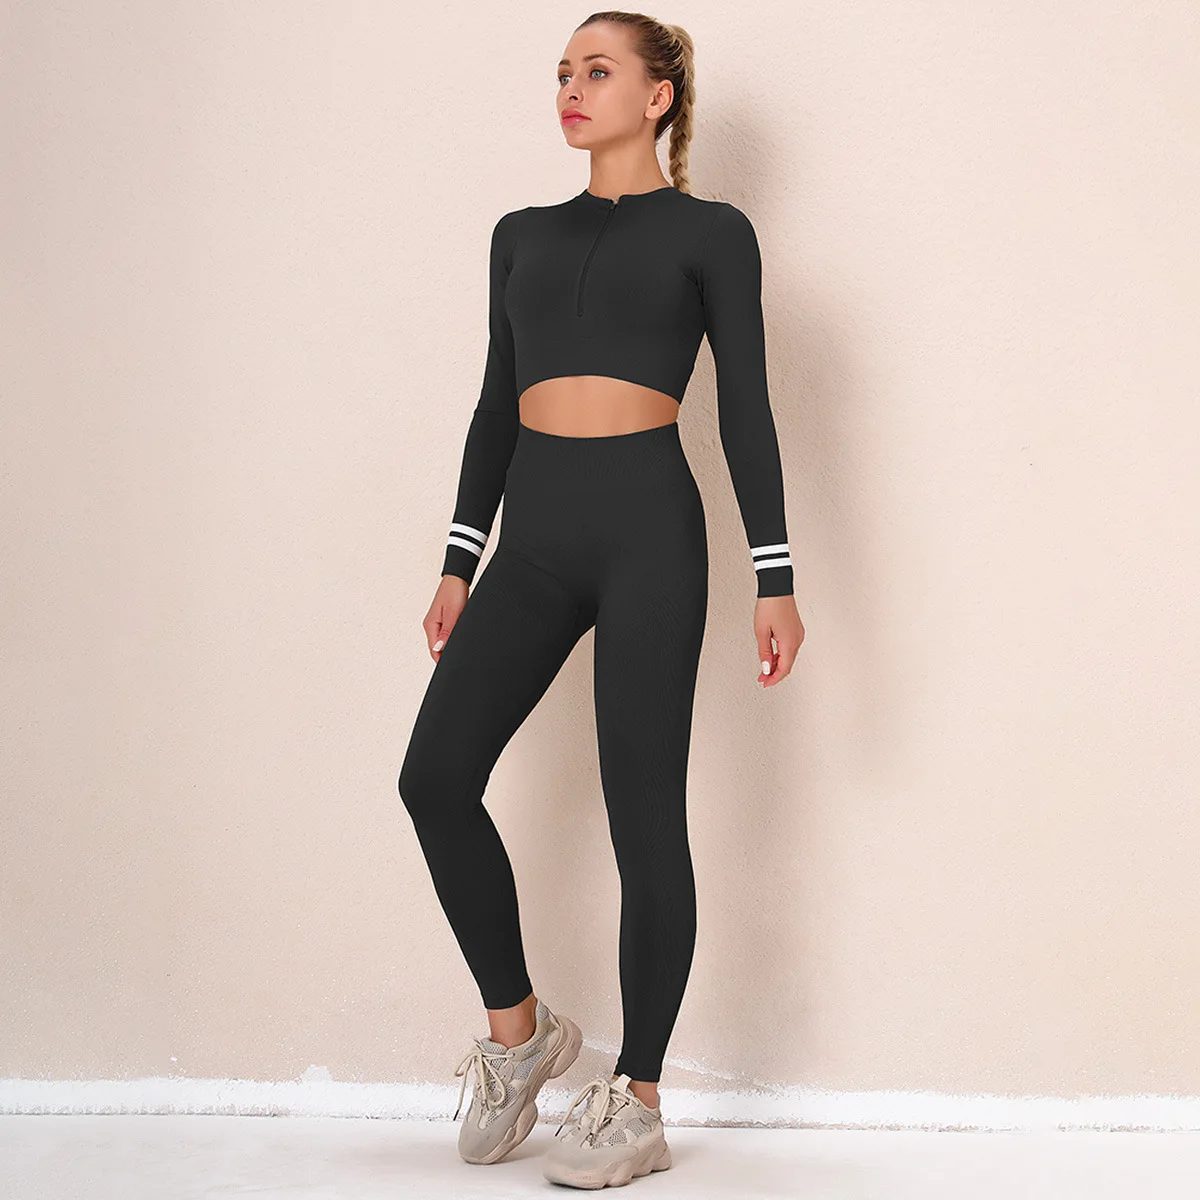 Spring 2022 Hot Sales Women Hiking Wear Zipper Long Sleeves Crop Top High Waist Legging Seamless Yoga Set